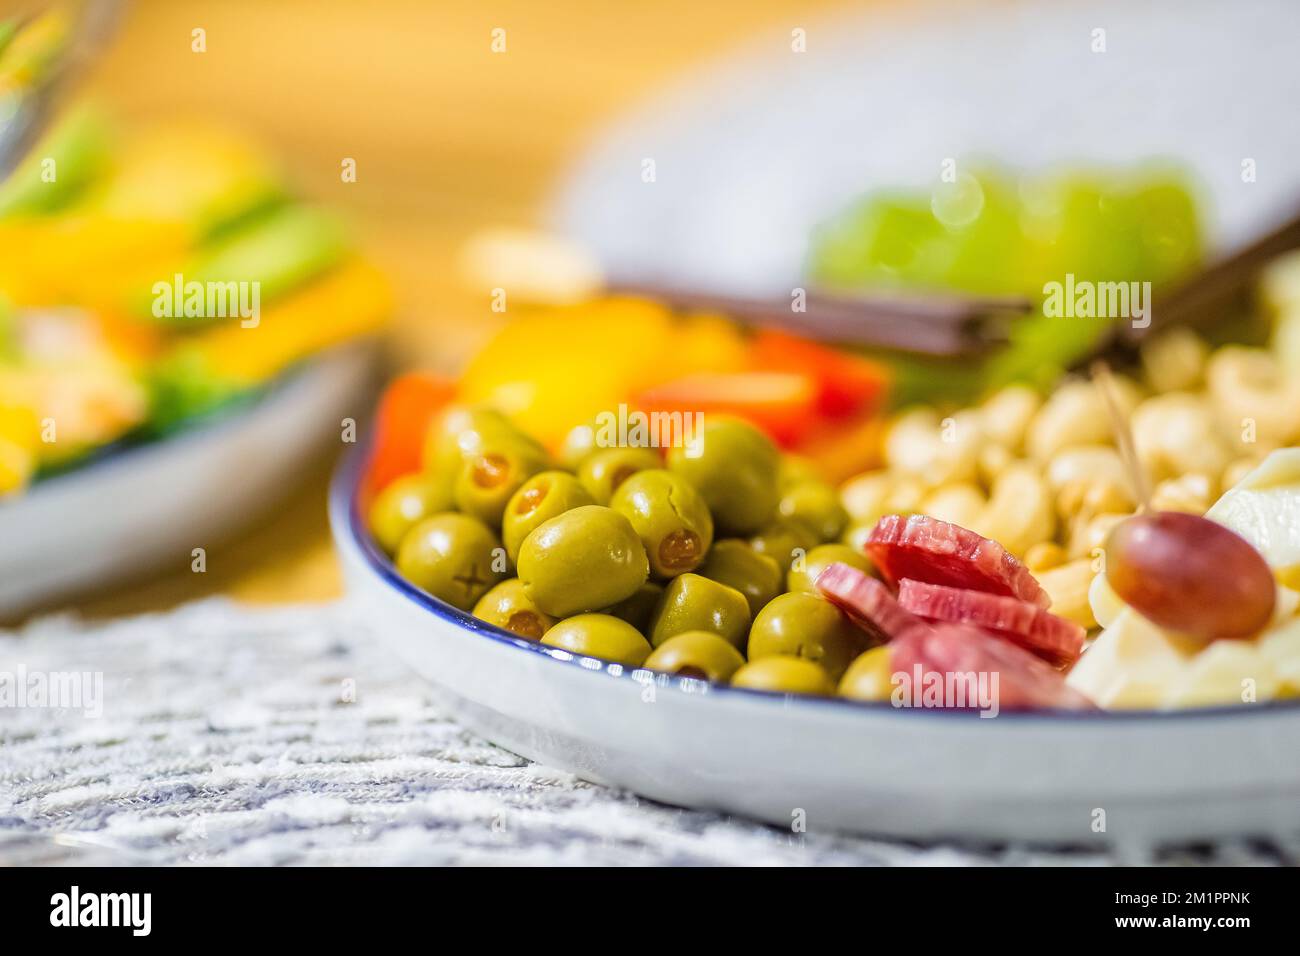 Piatto di antipasti con diversi spuntini, formaggi, olive, frutta e noci Foto Stock